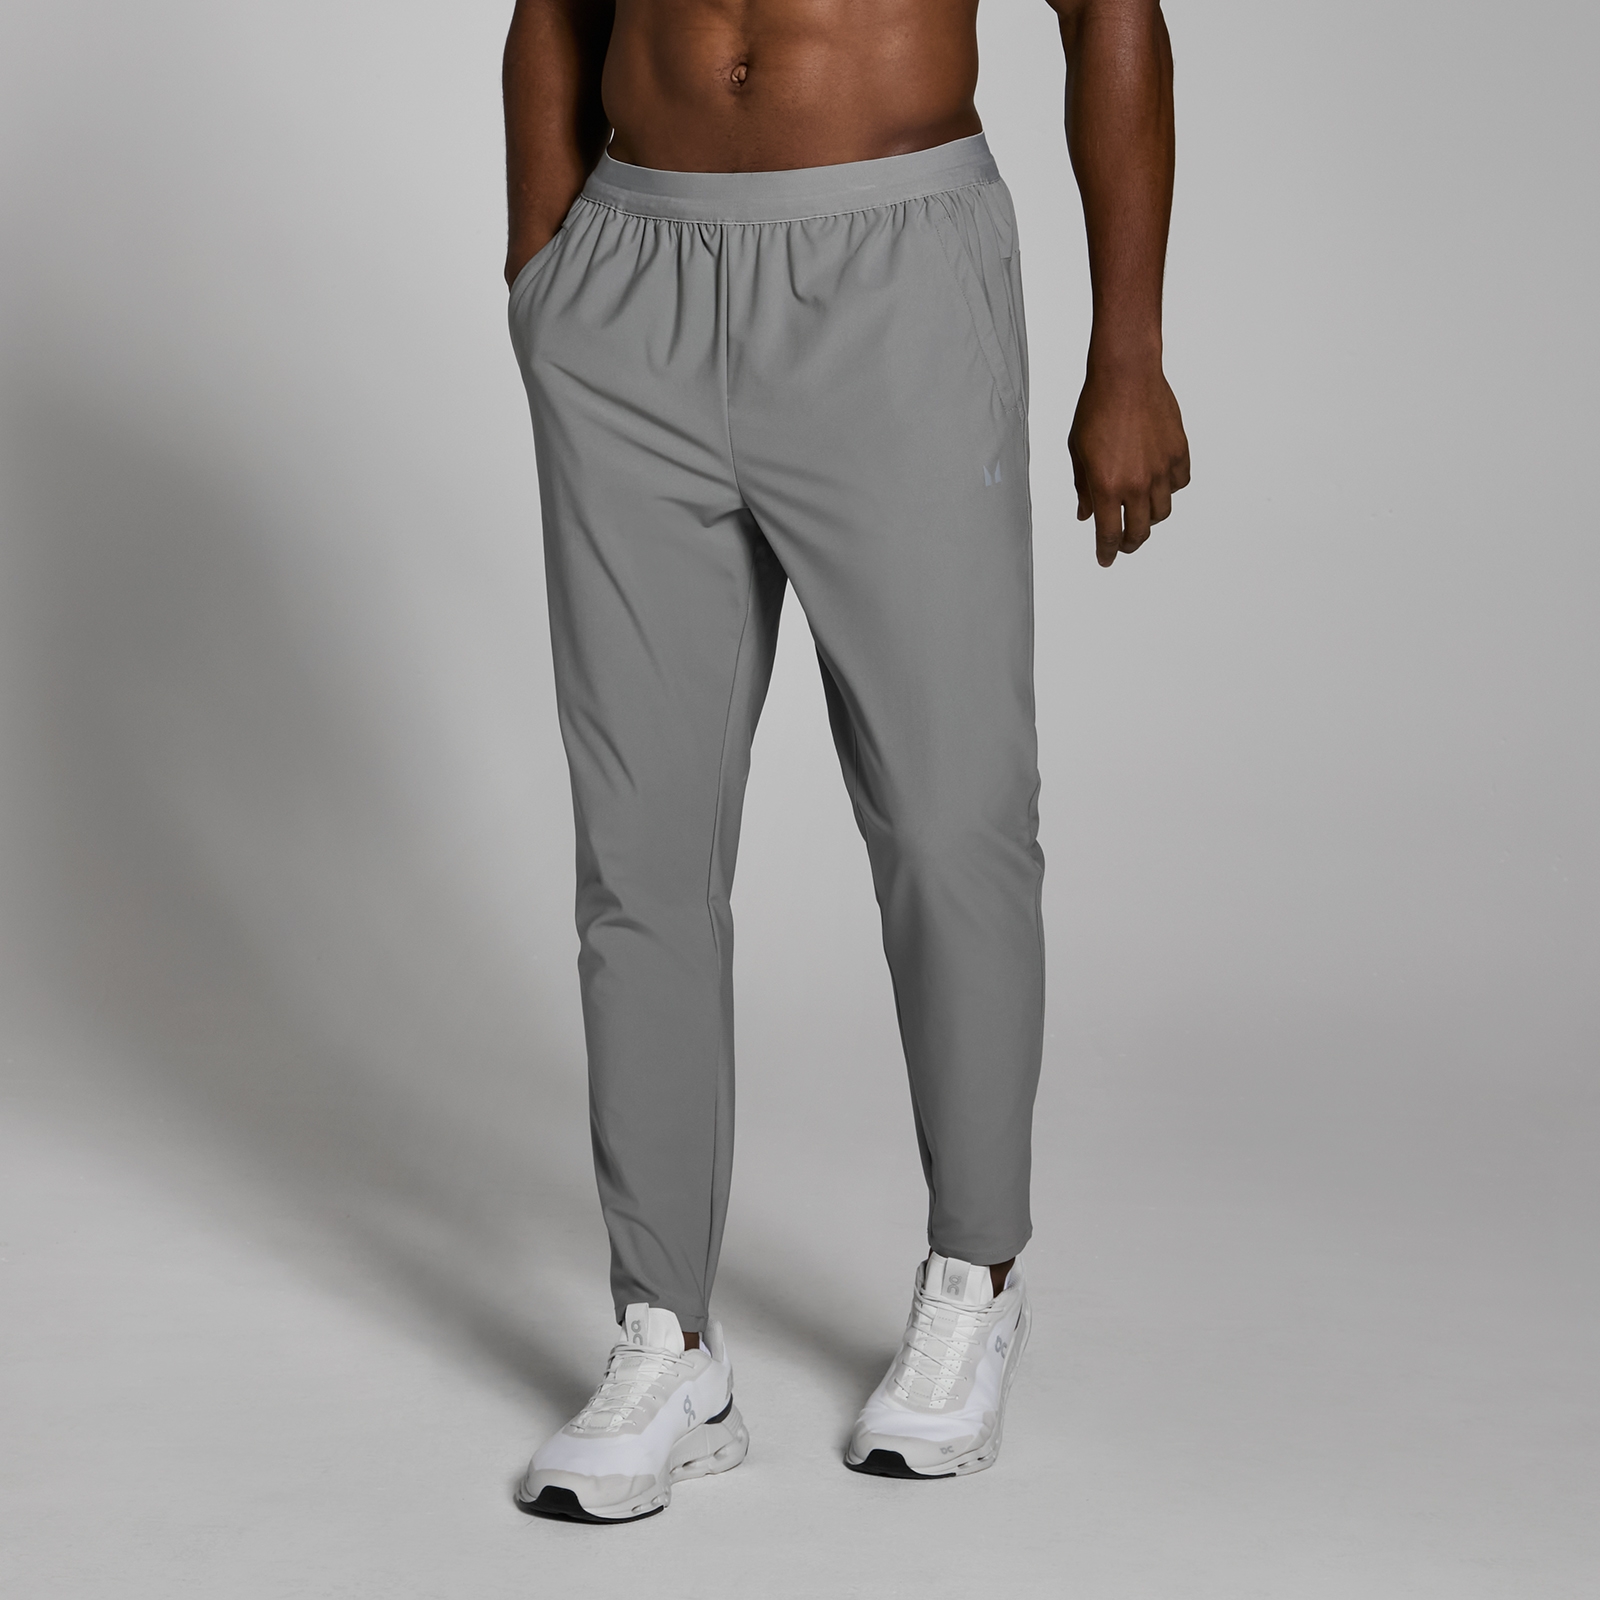 Image of Pantaloni da jogging in tessuto MP Lifestyle da uomo - Grigio tempesta - XL